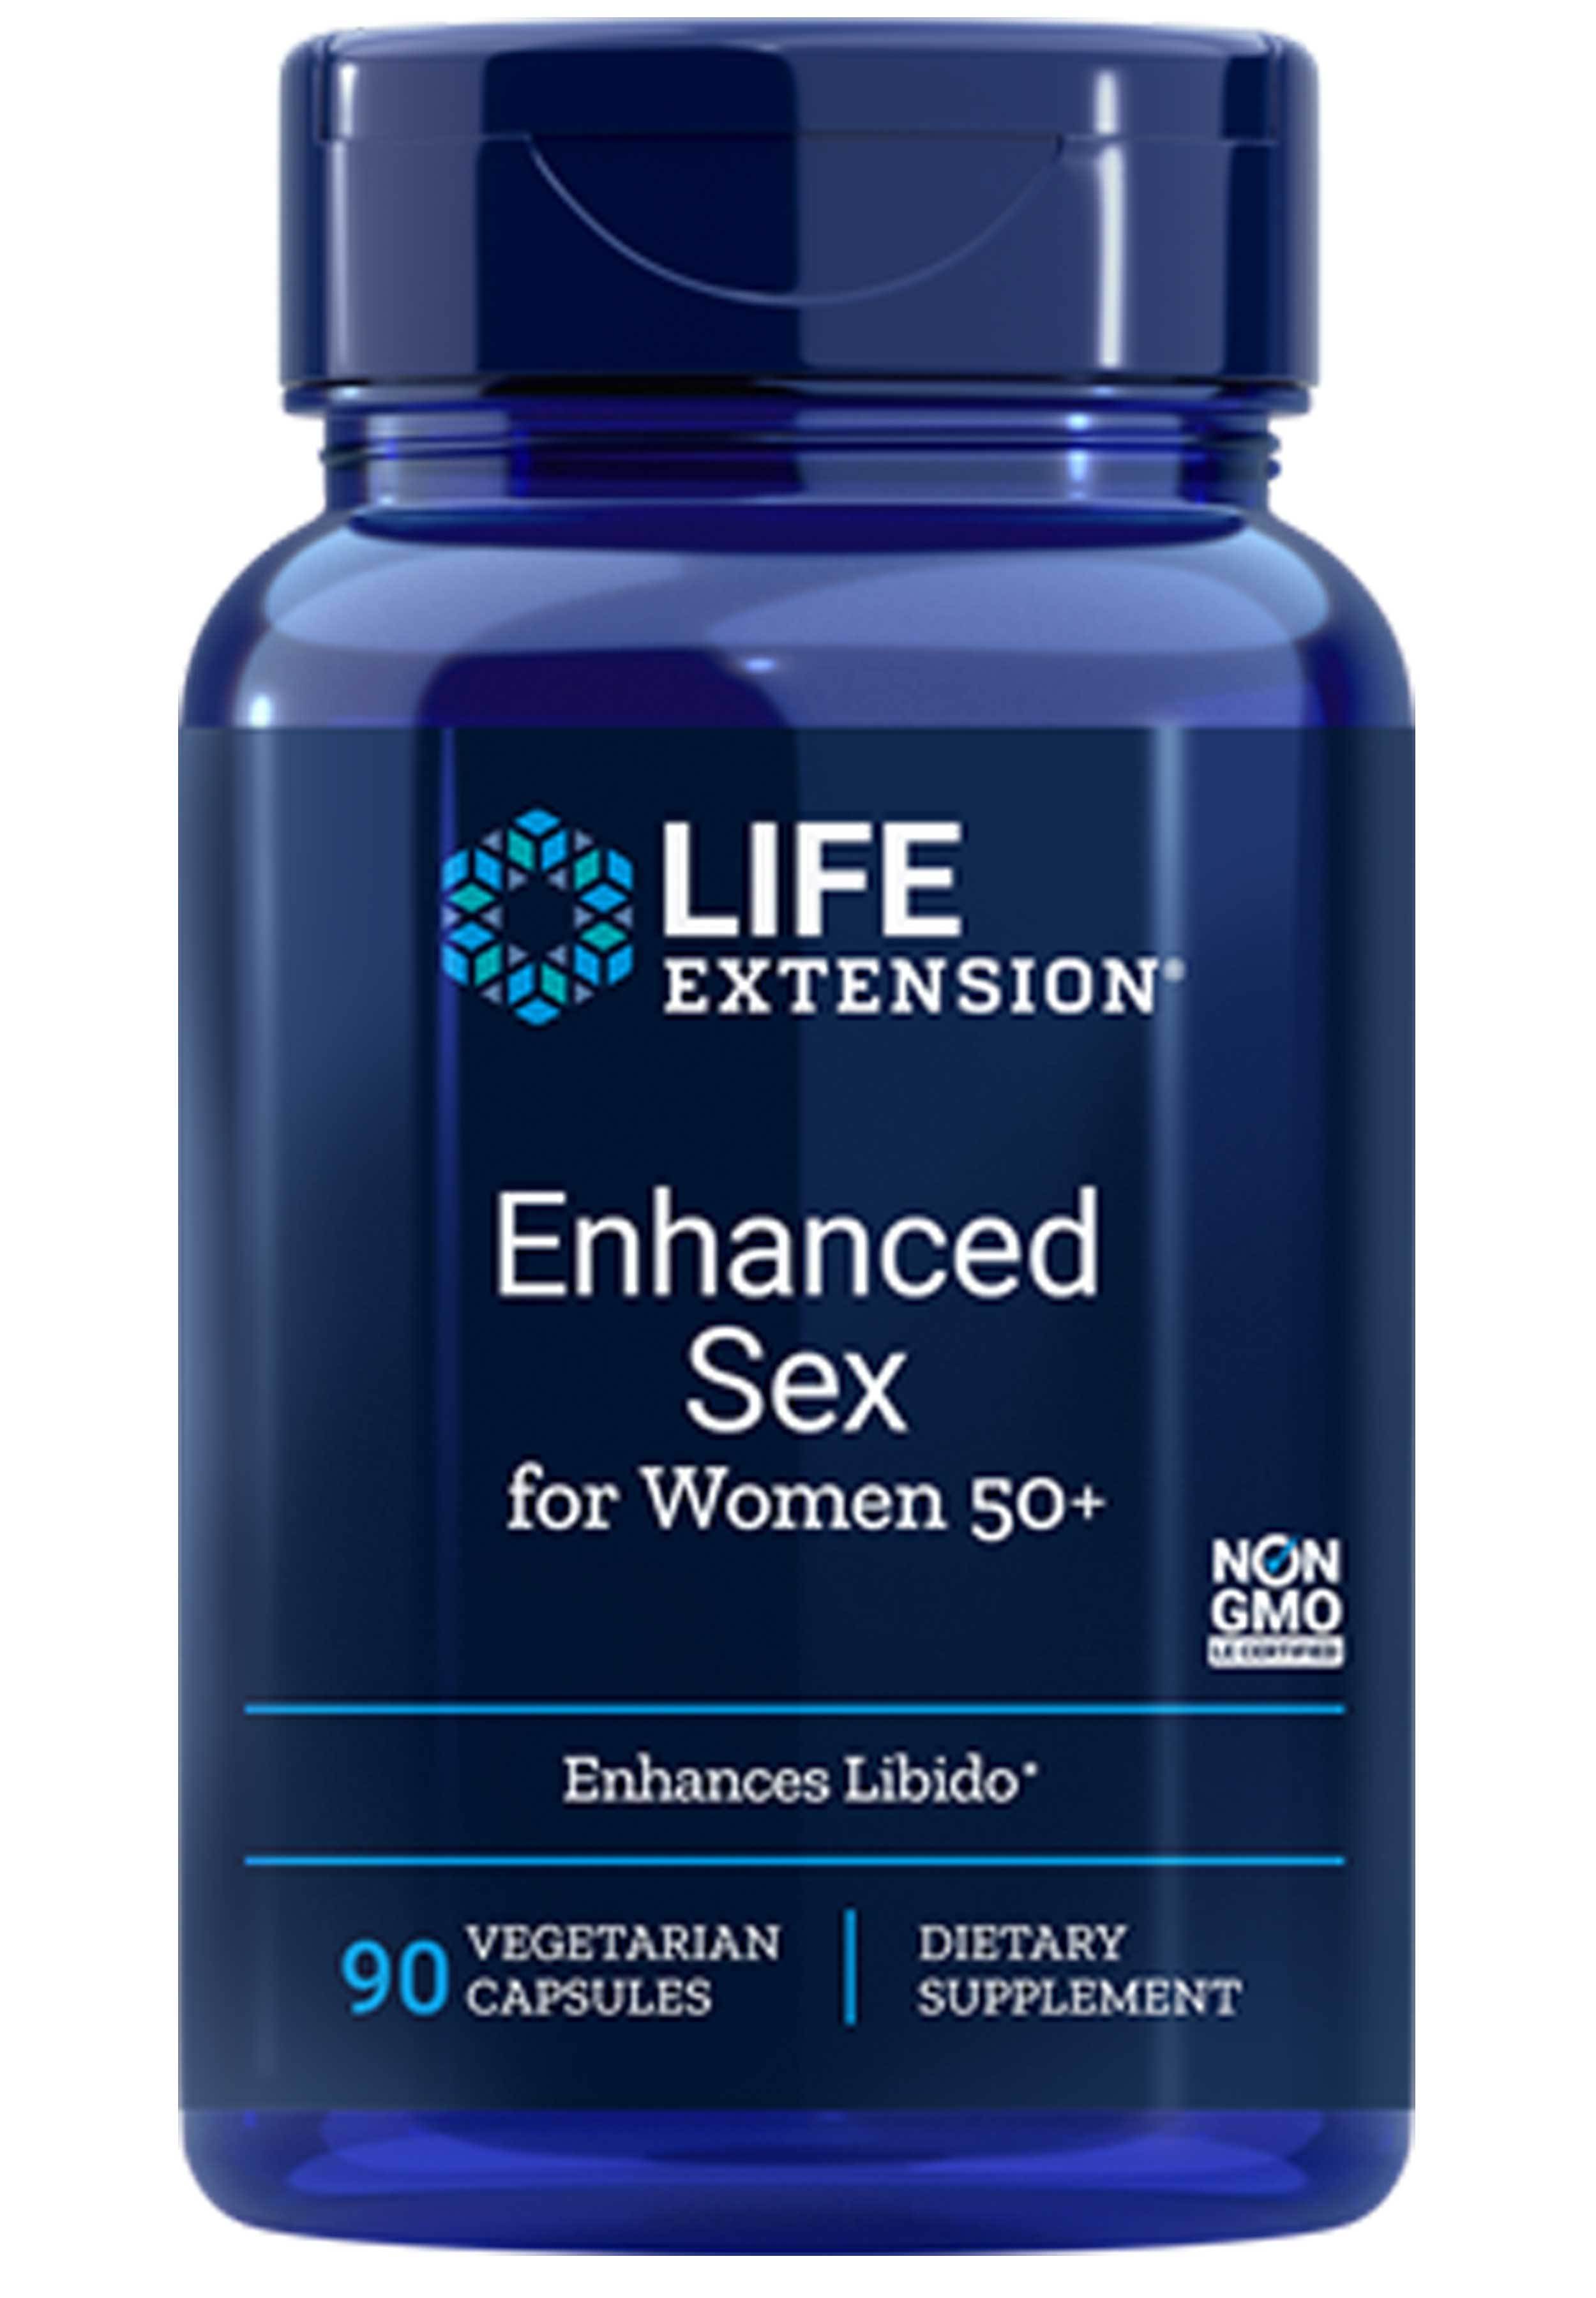 Life Extension Enhanced Sex for Women 50+ Full